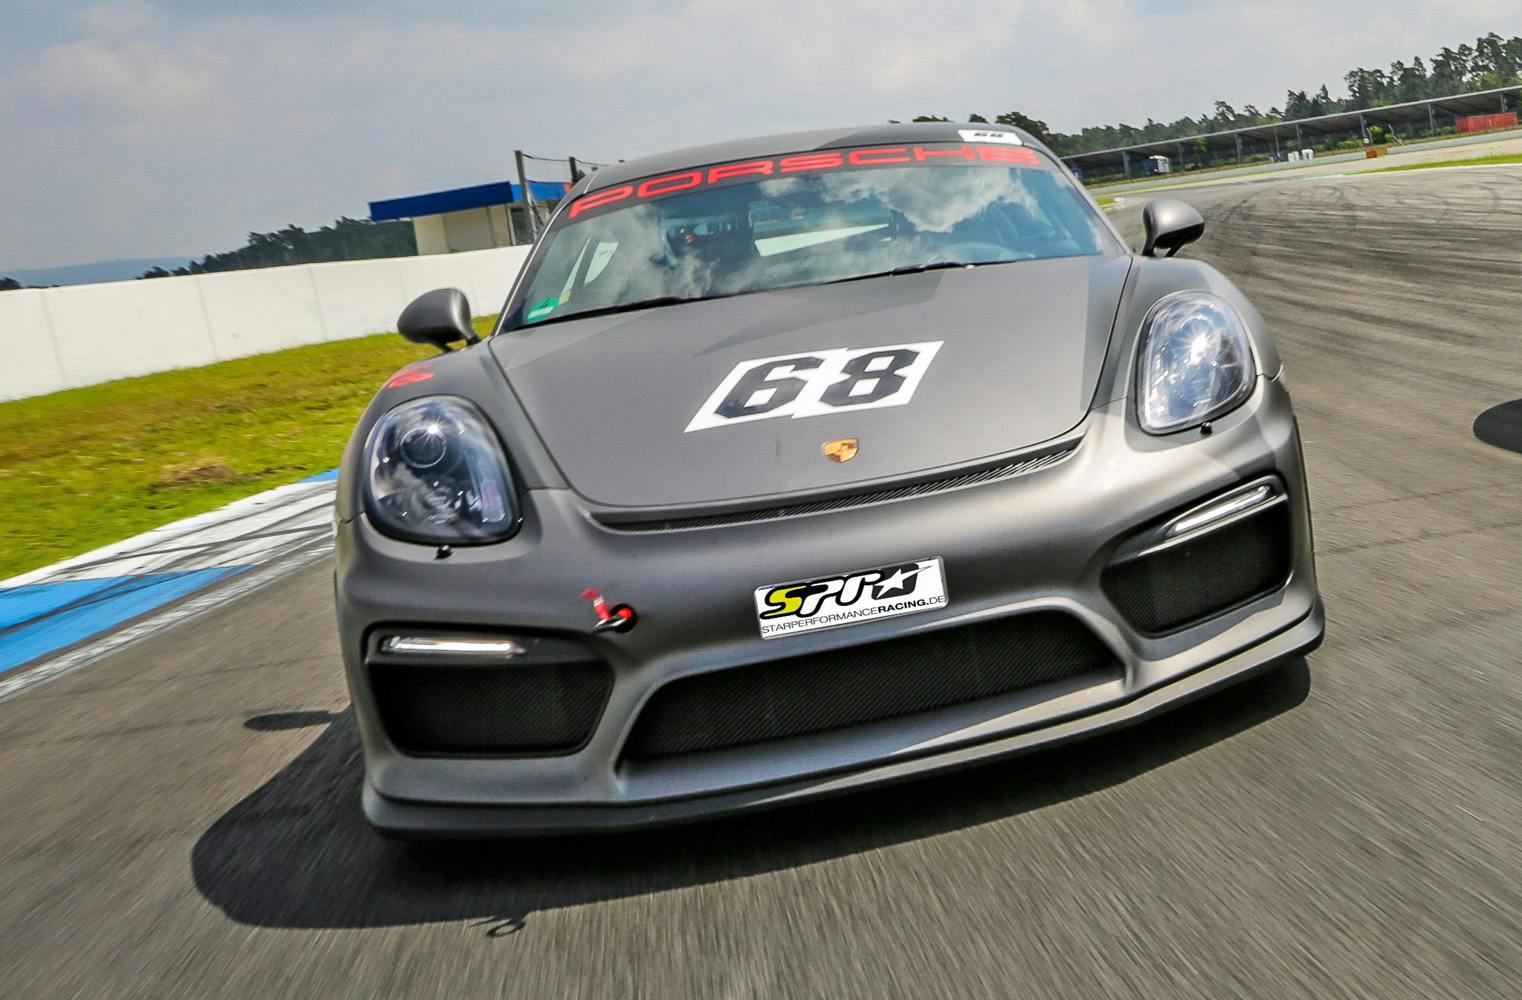 Porsche GT4 fahren | Grand-Prix-Rennstrecke | 4 Runden